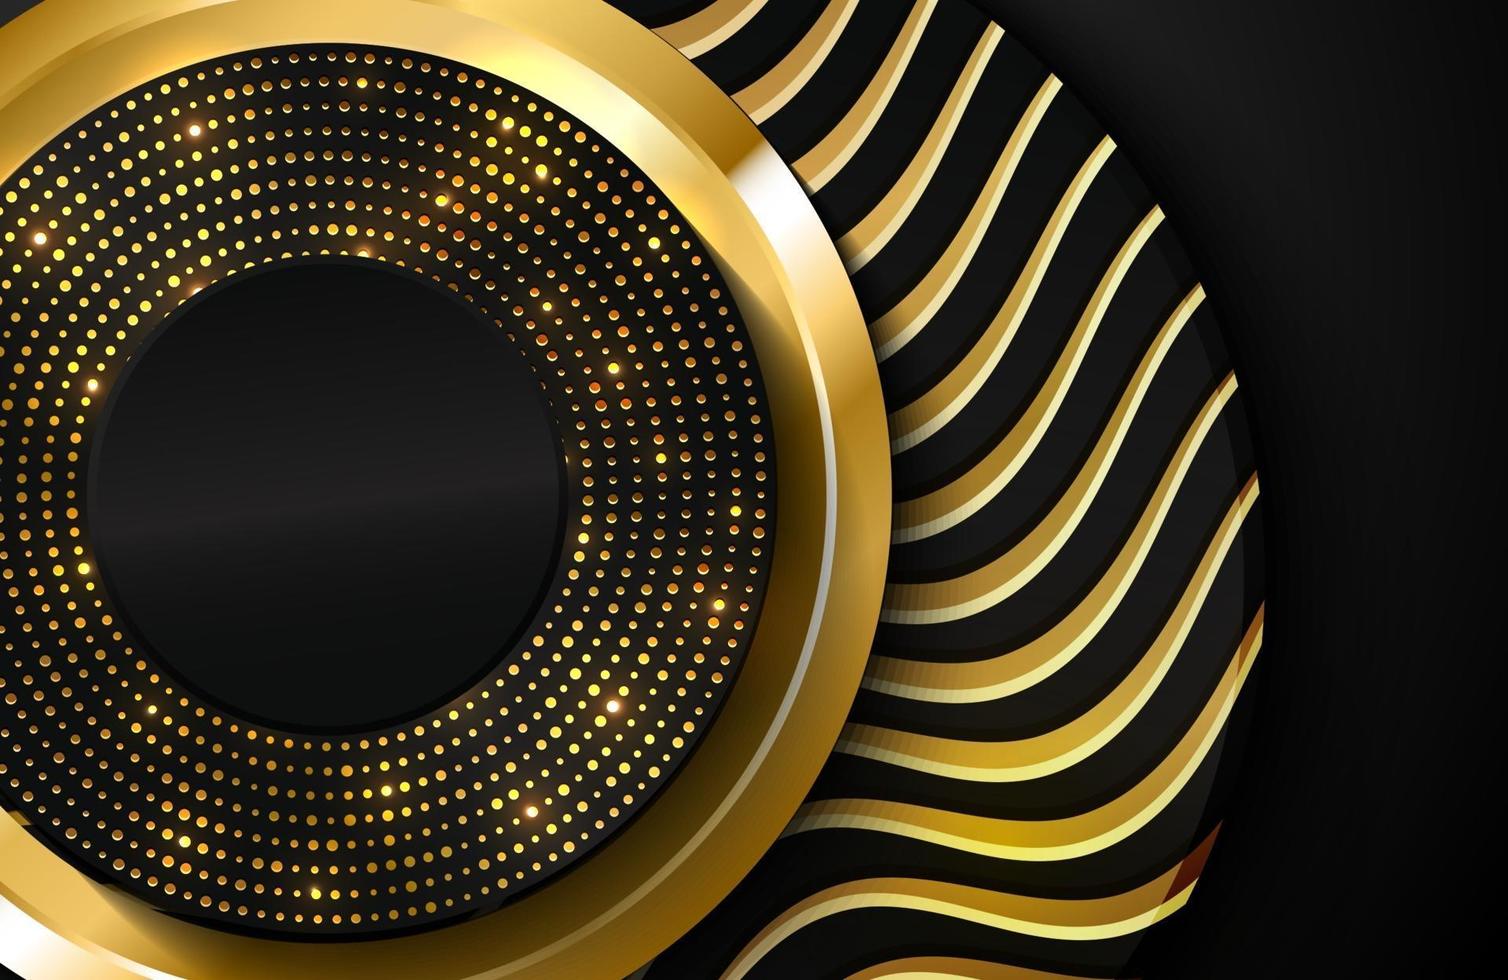 luxo 3d fundo realista com forma de círculo dourado ilustração vetorial de formas de círculo preto texturizado com linhas onduladas douradas vetor